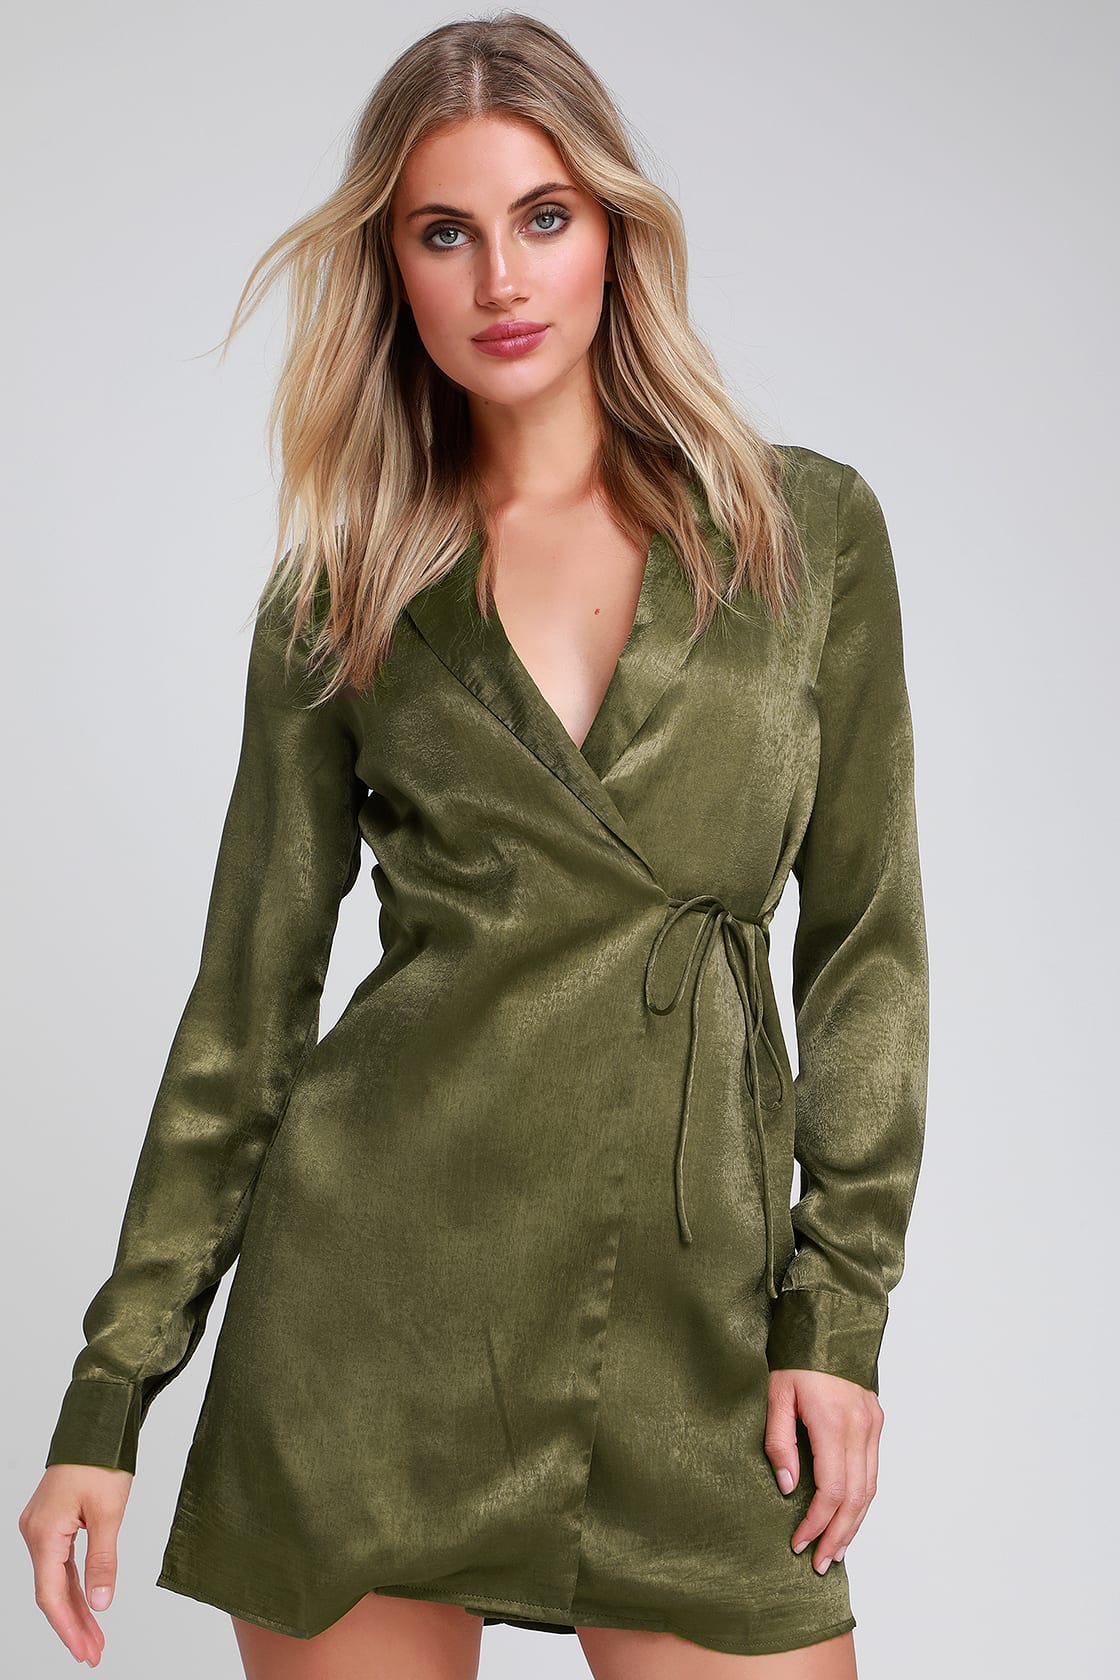 Chic Olive Green Dress - Satin Dress - Blazer Dress - Wrap Dress - Lulus